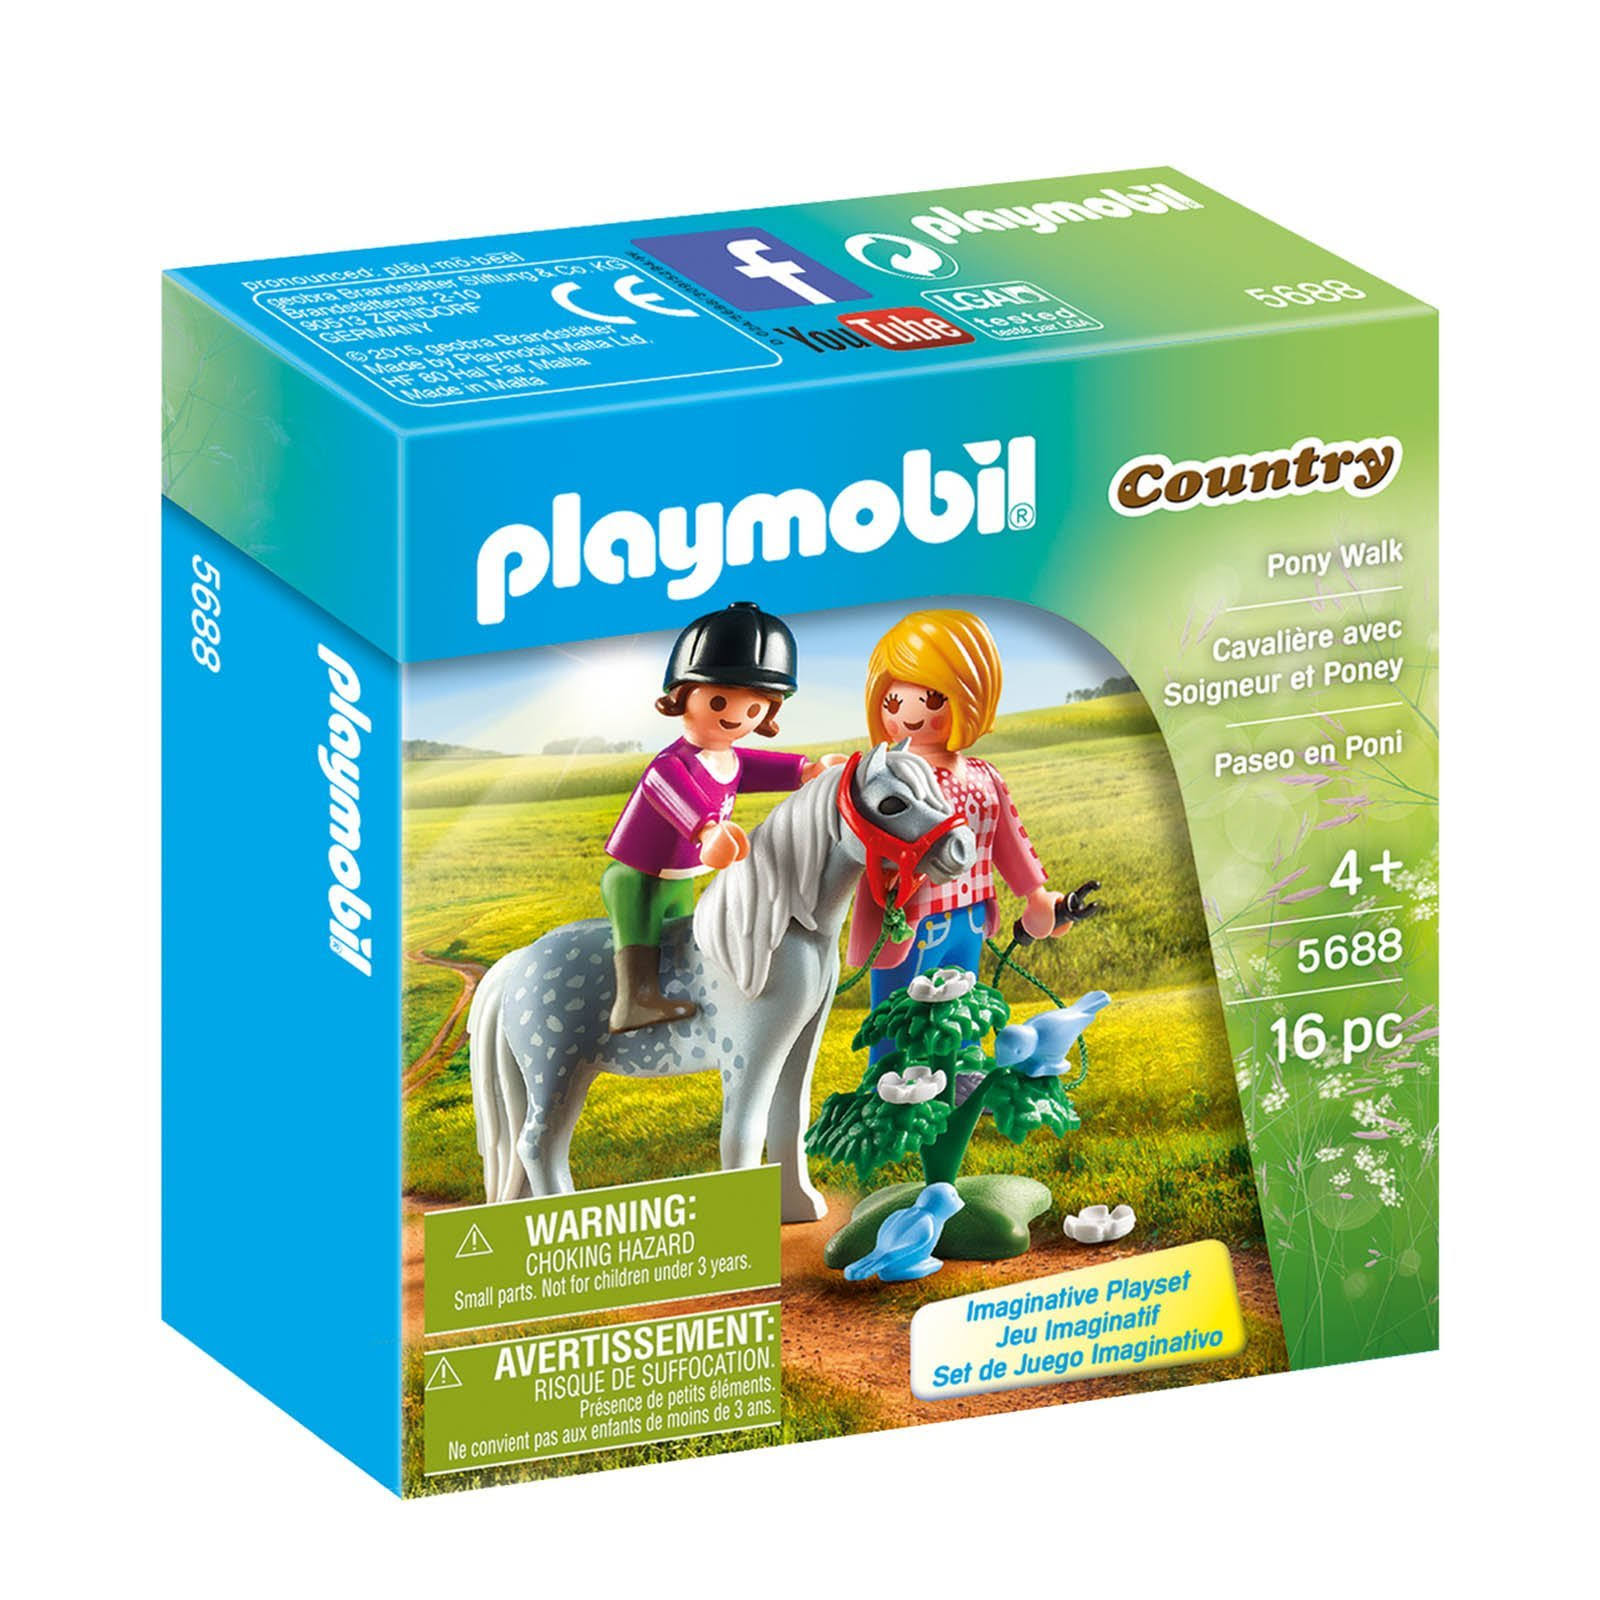 Playmobil Country - Pony Walk Toy Kit - 16pc